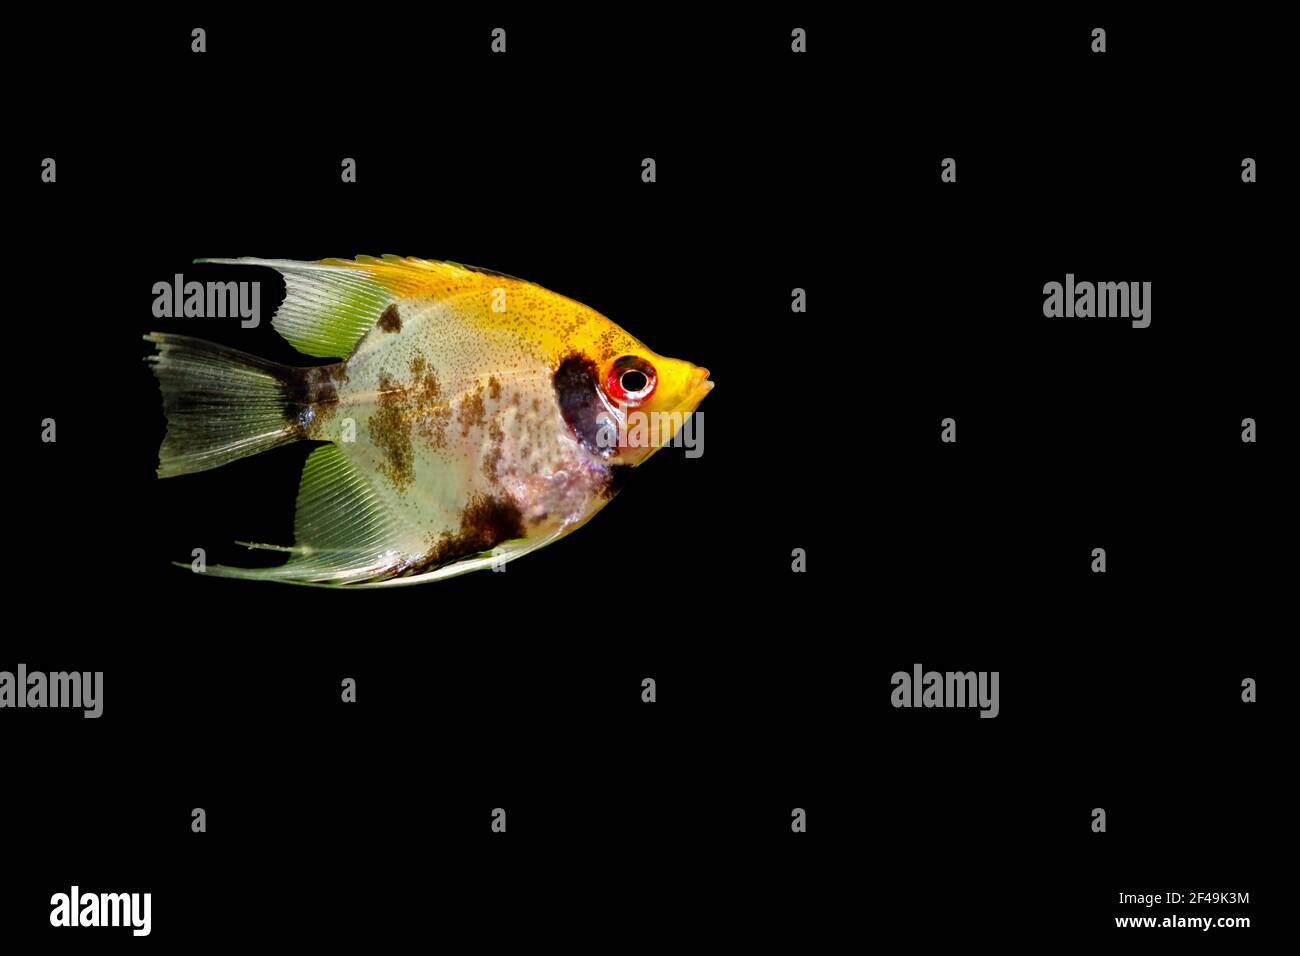 Pesce angelo (Pterophyllum scalare), noto anche come pesce angelo d'acqua dolce, isolato su sfondo nero. Foto Stock